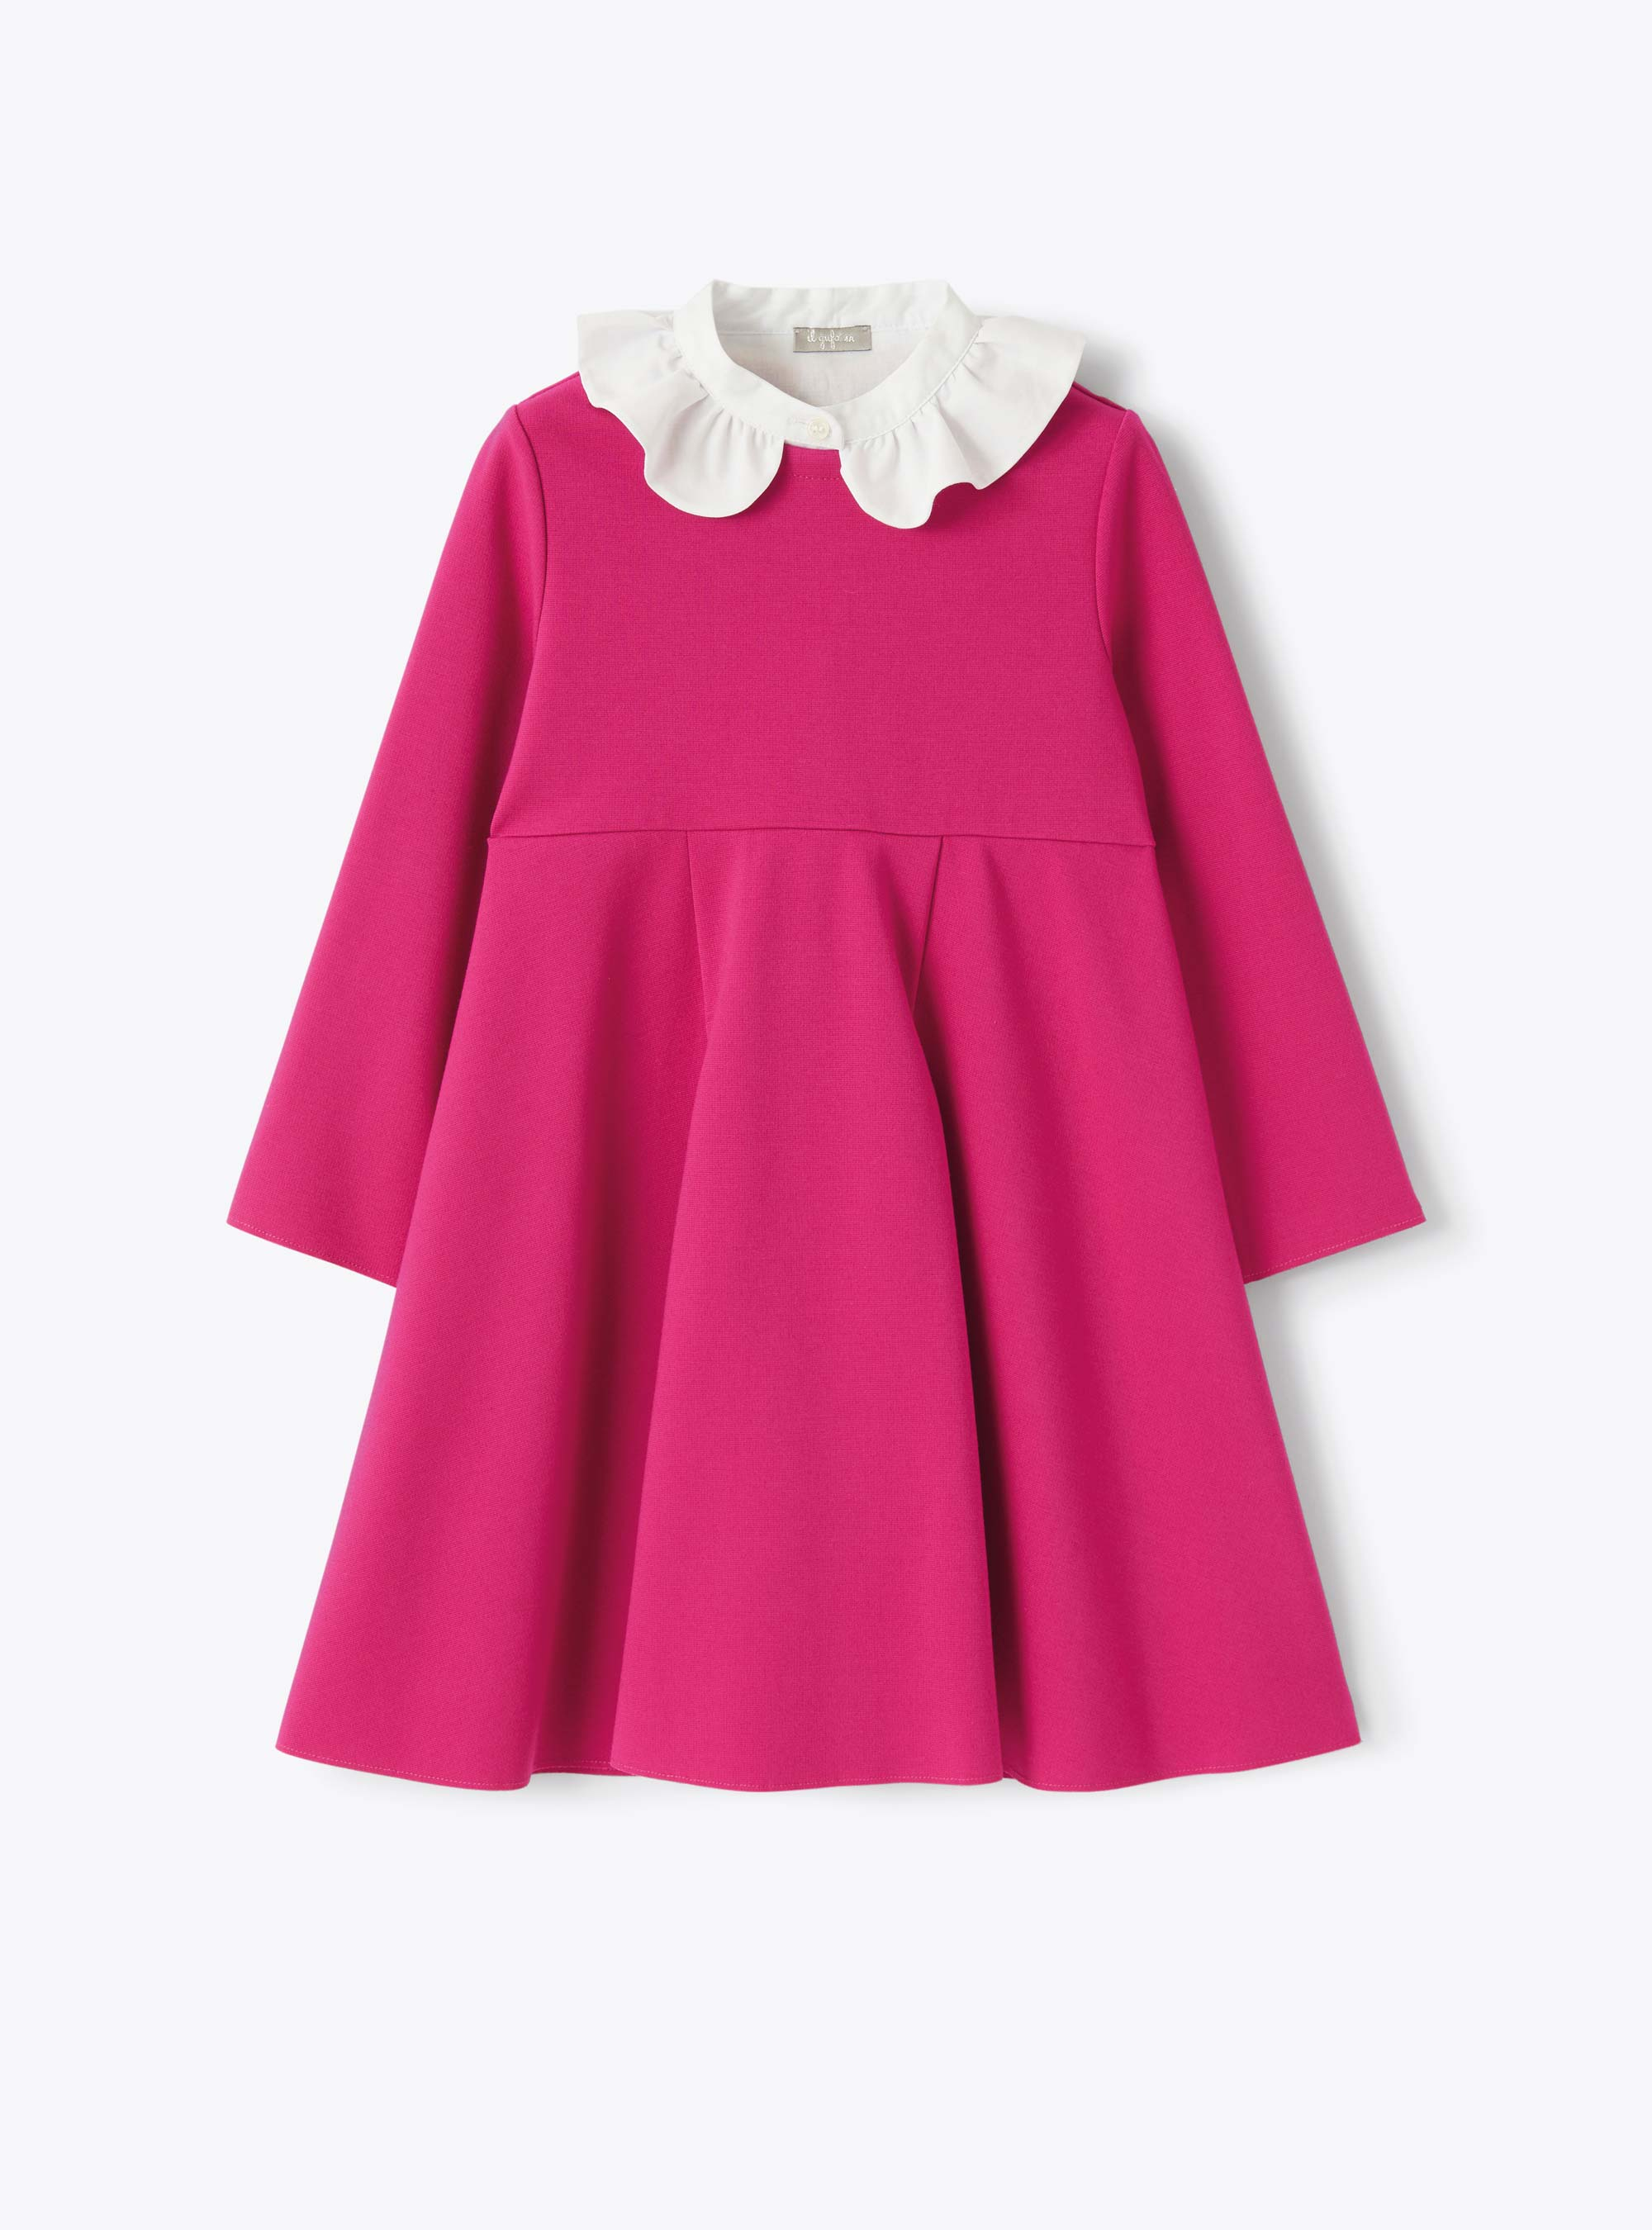 Dress in fuchsia-pink Milano-stitch fabric - Fuchsia | Il Gufo